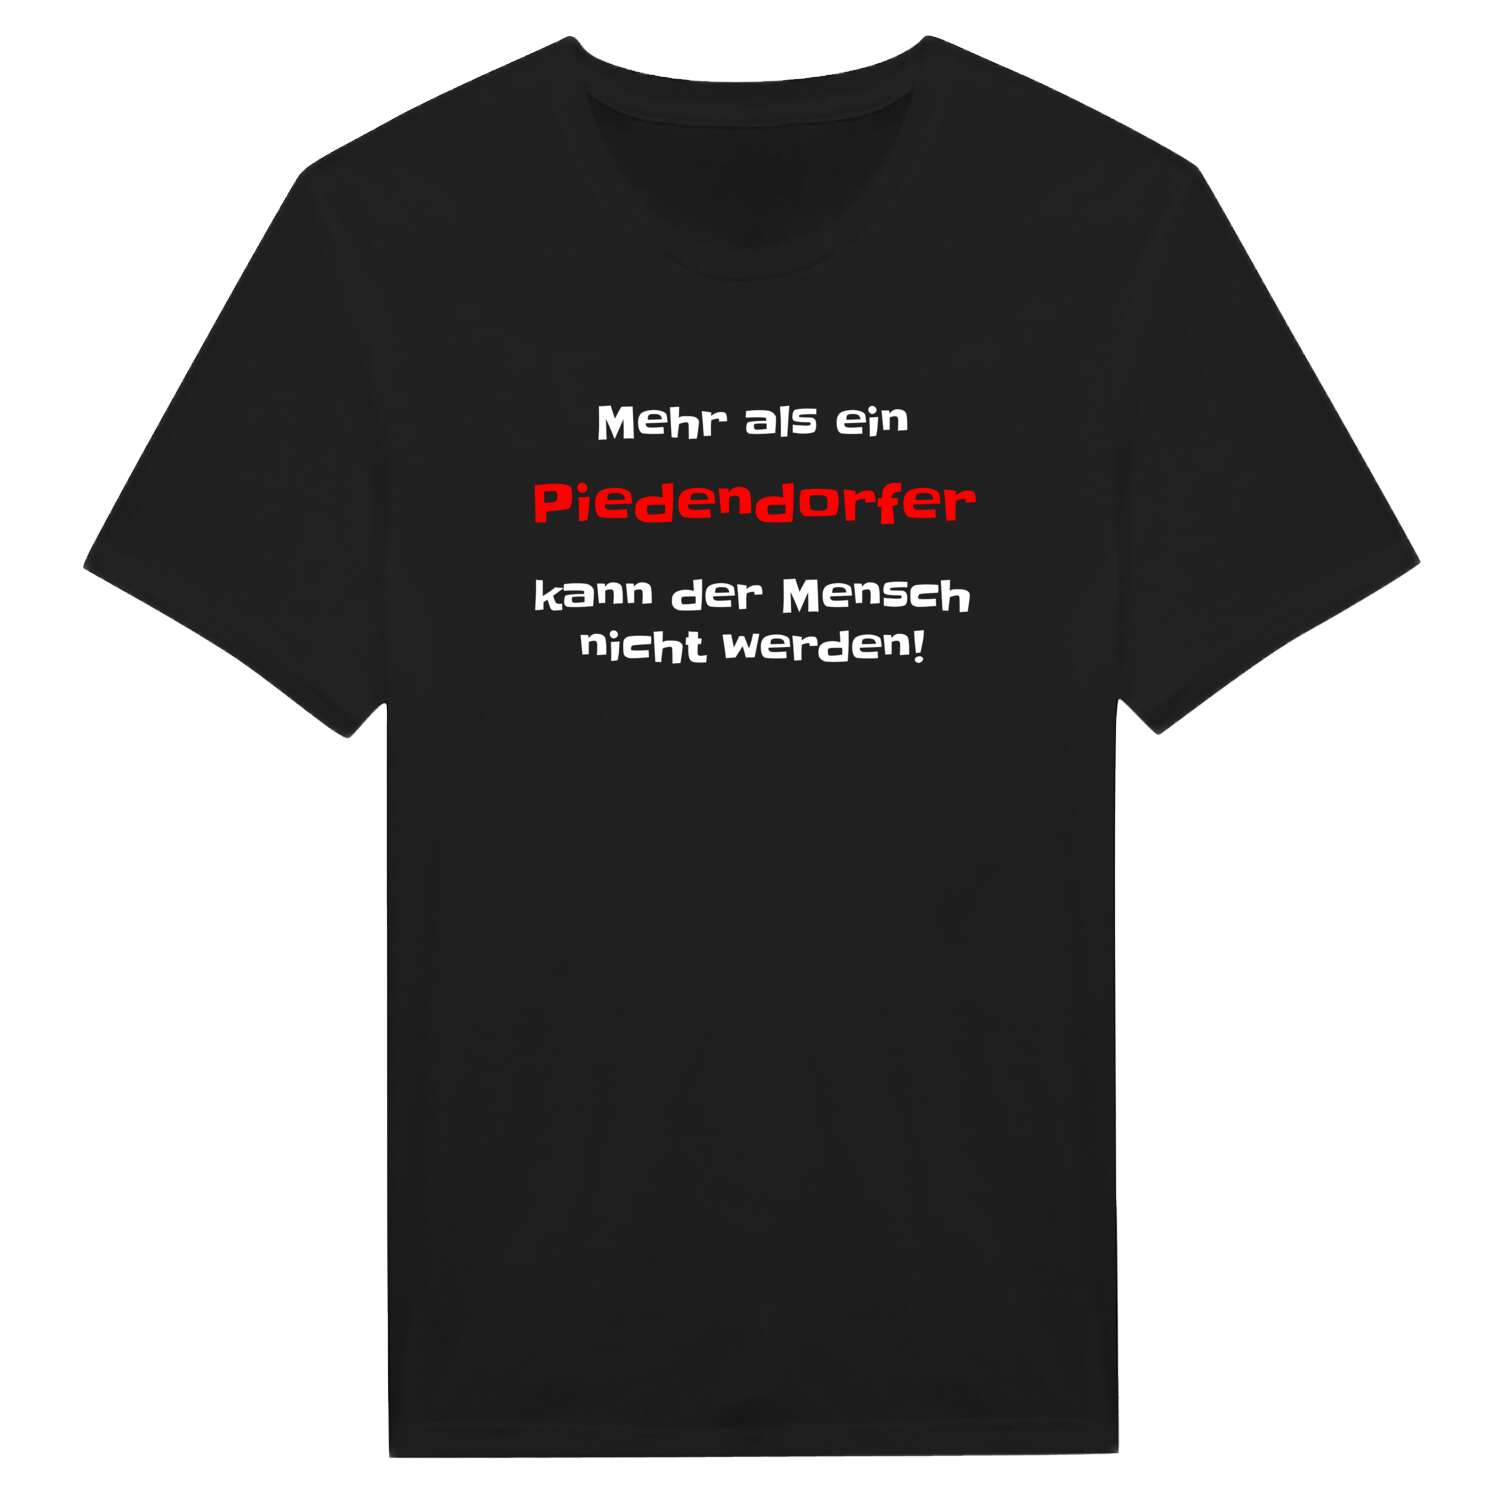 Piedendorf T-Shirt »Mehr als ein«